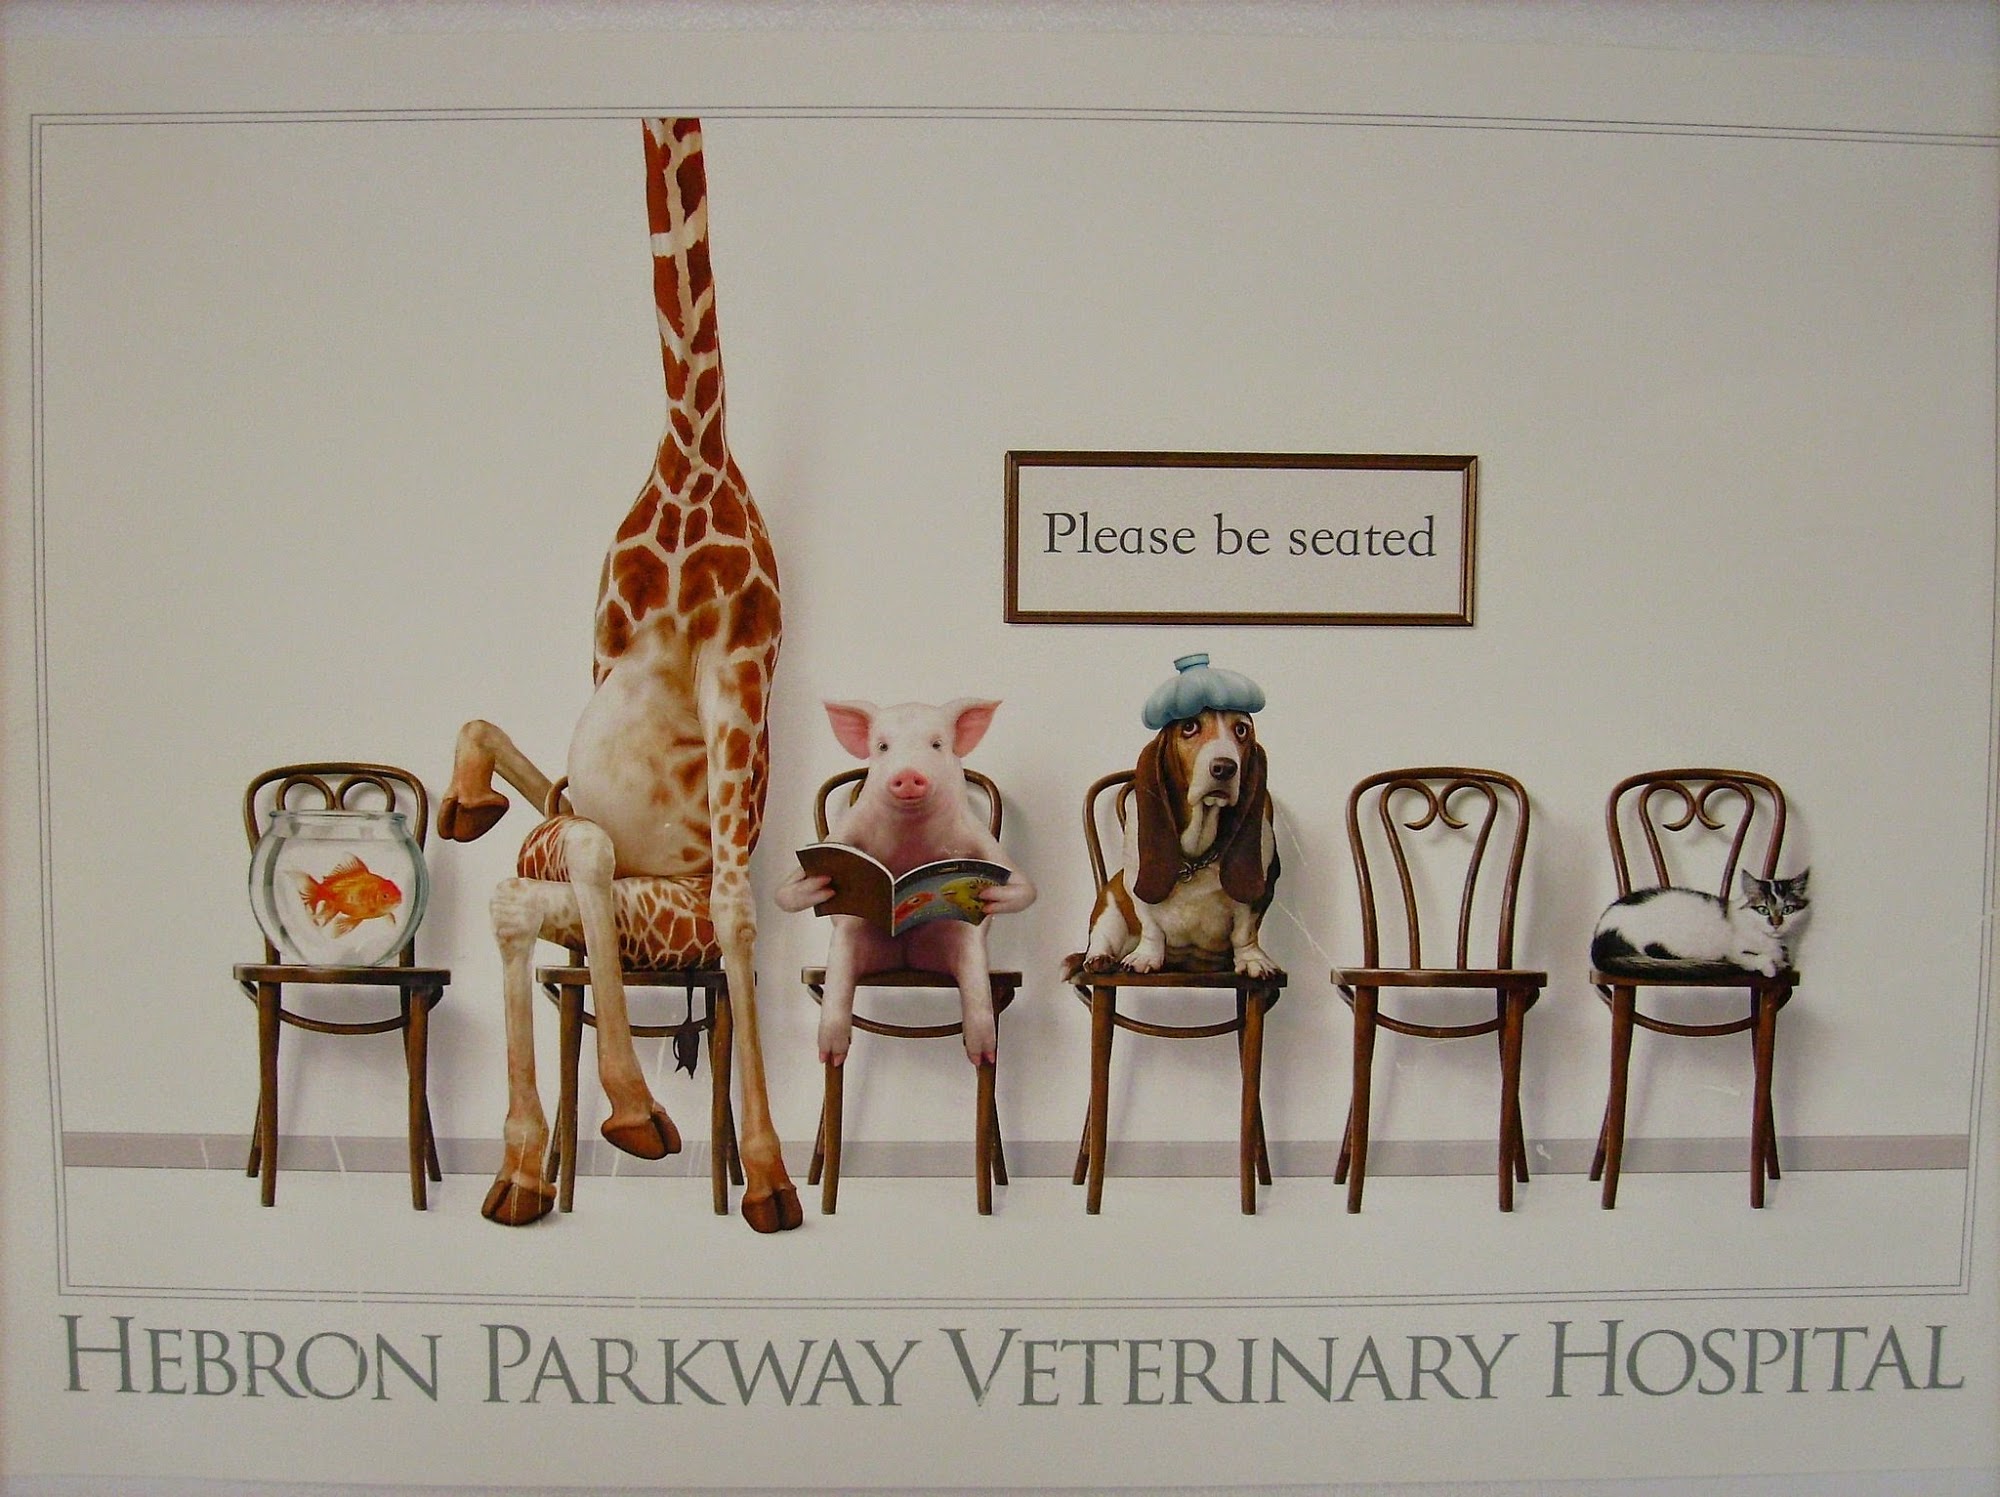 Hebron Parkway Veterinary Hospital